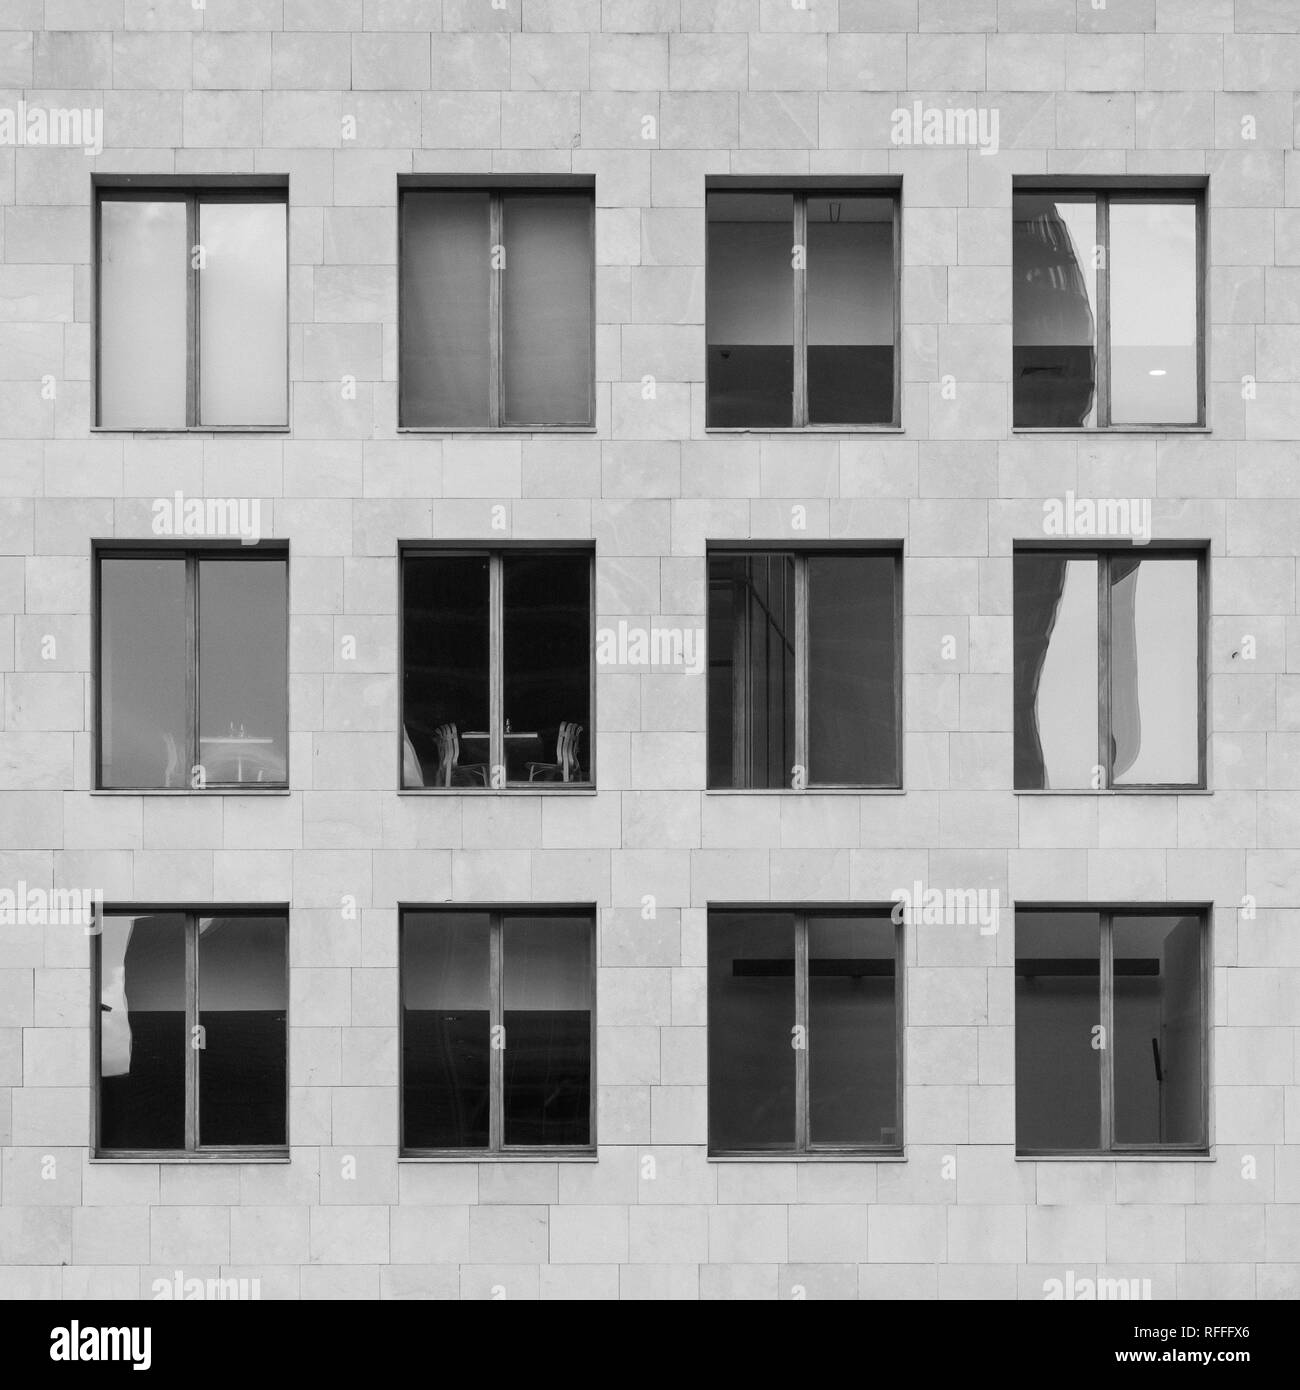 Détails de quelques fenêtres dans le Musée Guggenheim à Bilbao, Espagne Banque D'Images